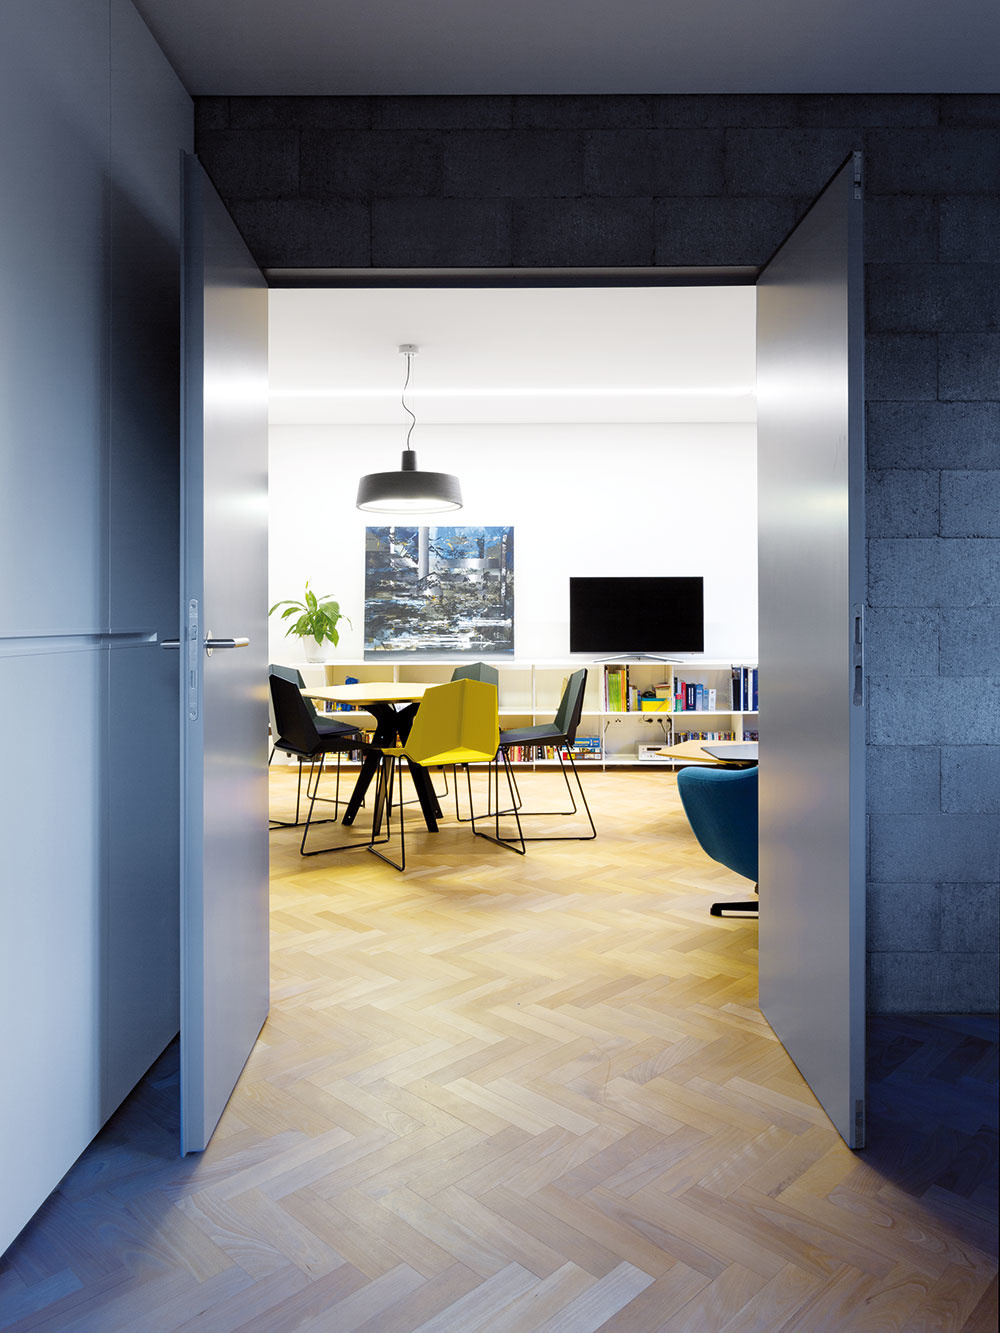 Moderné kontrasty. Tvrdosť betónu a ocele zjemňuje drevená podlaha, osvetlenie a závesy. Spoločne dotvárajú príjemný pocit otvorenosti a jednoduchosti. 